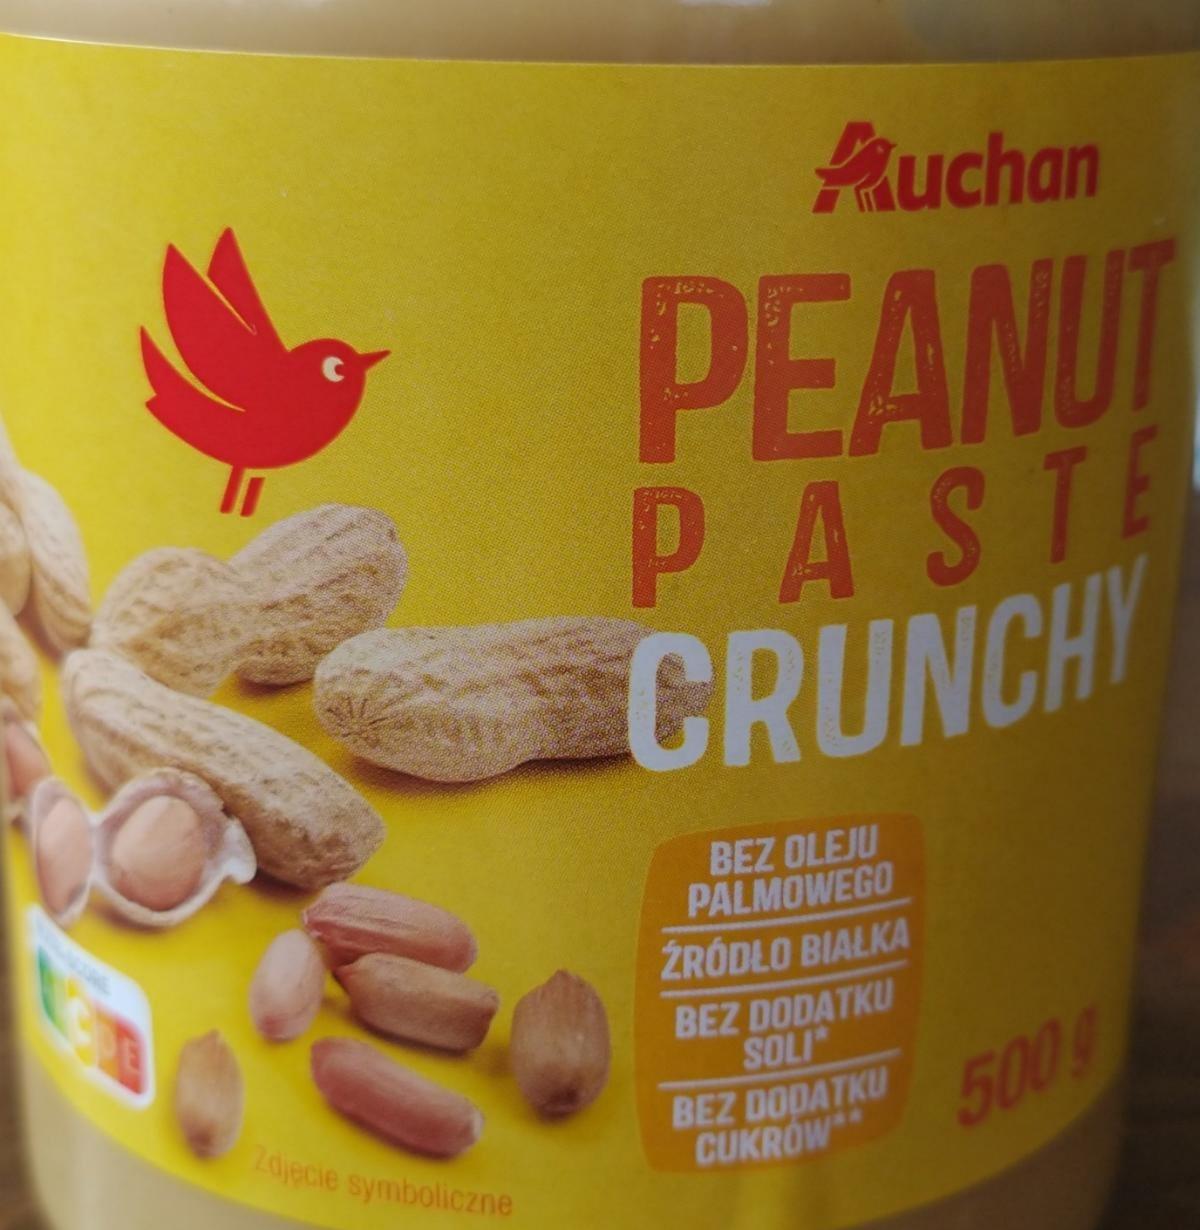 Fotografie - Peanut paste crunchy Auchan